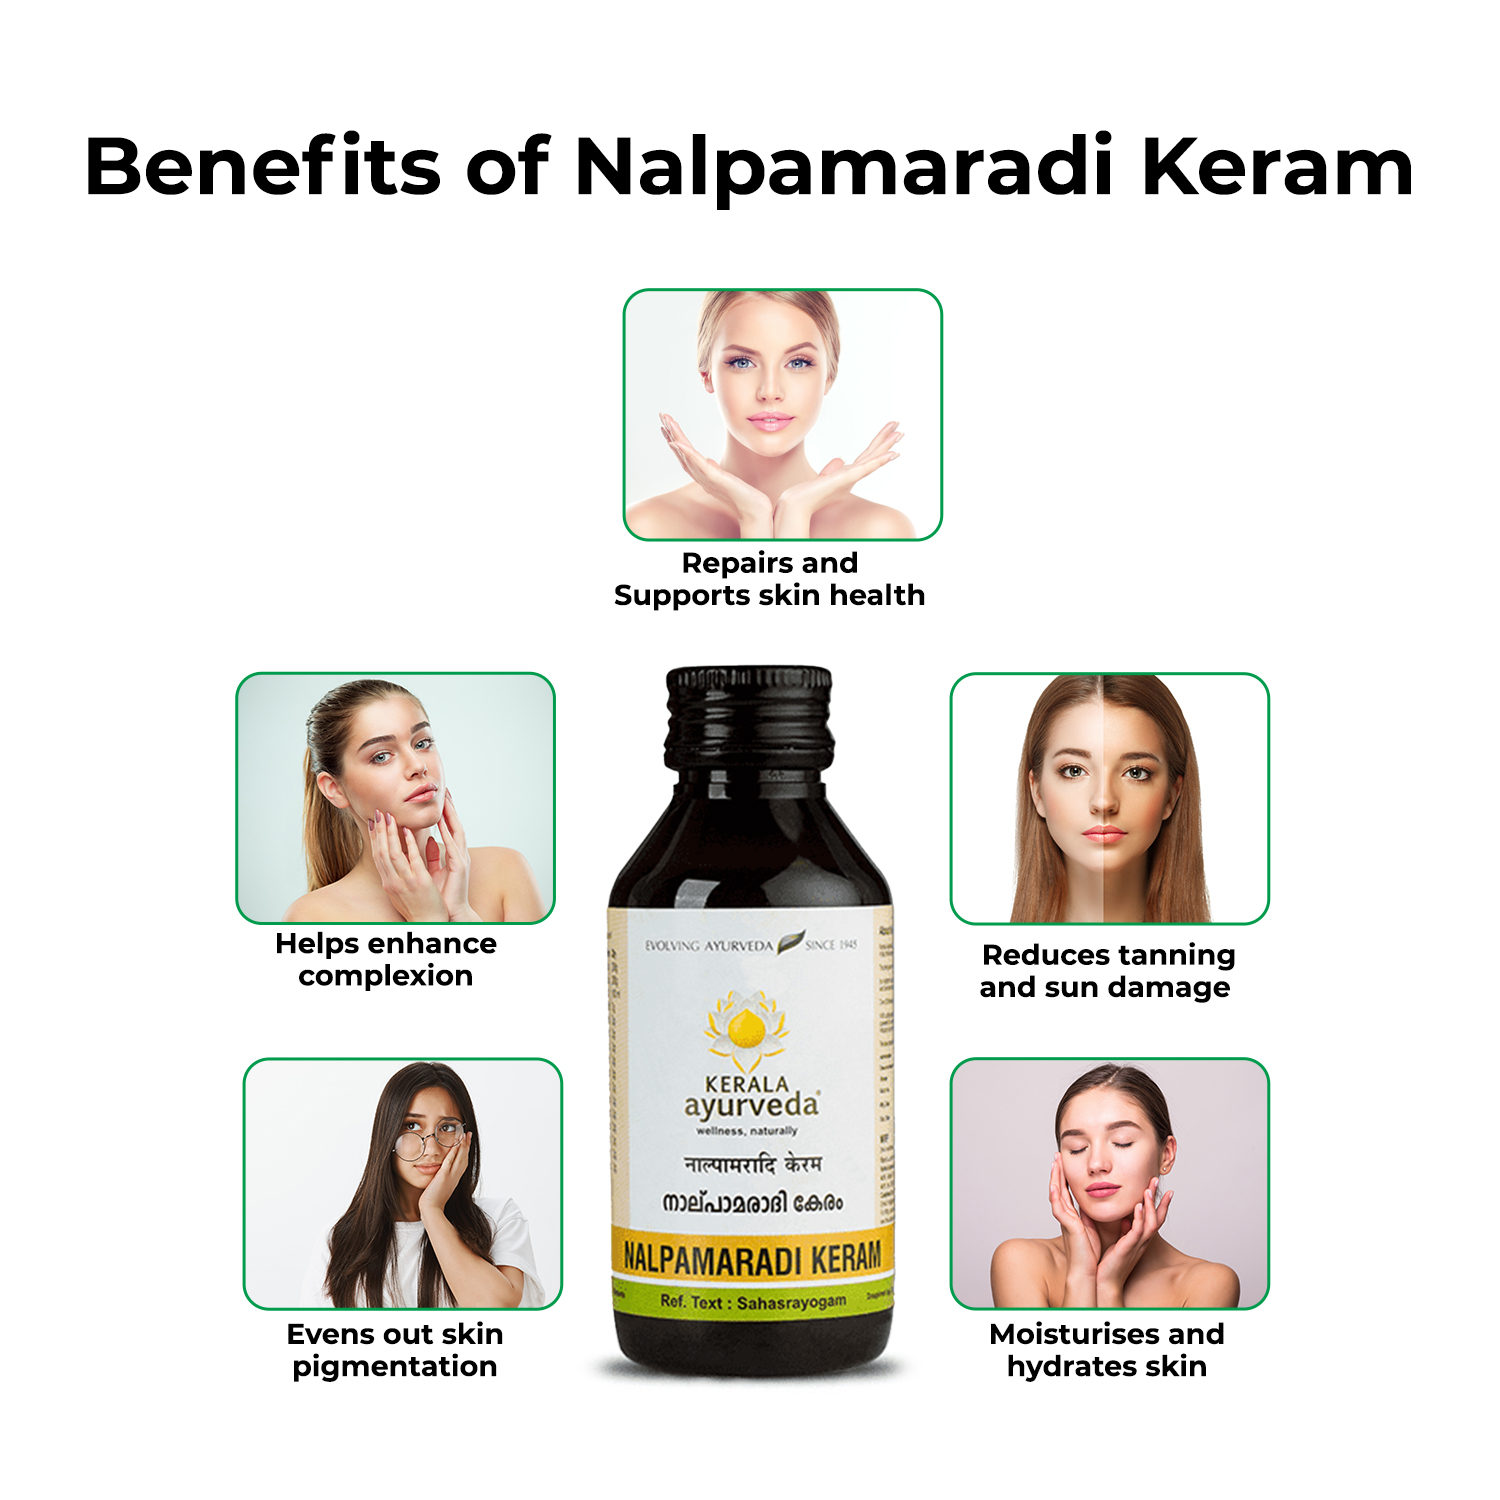 Benefits of using Nalpamaradi Keram